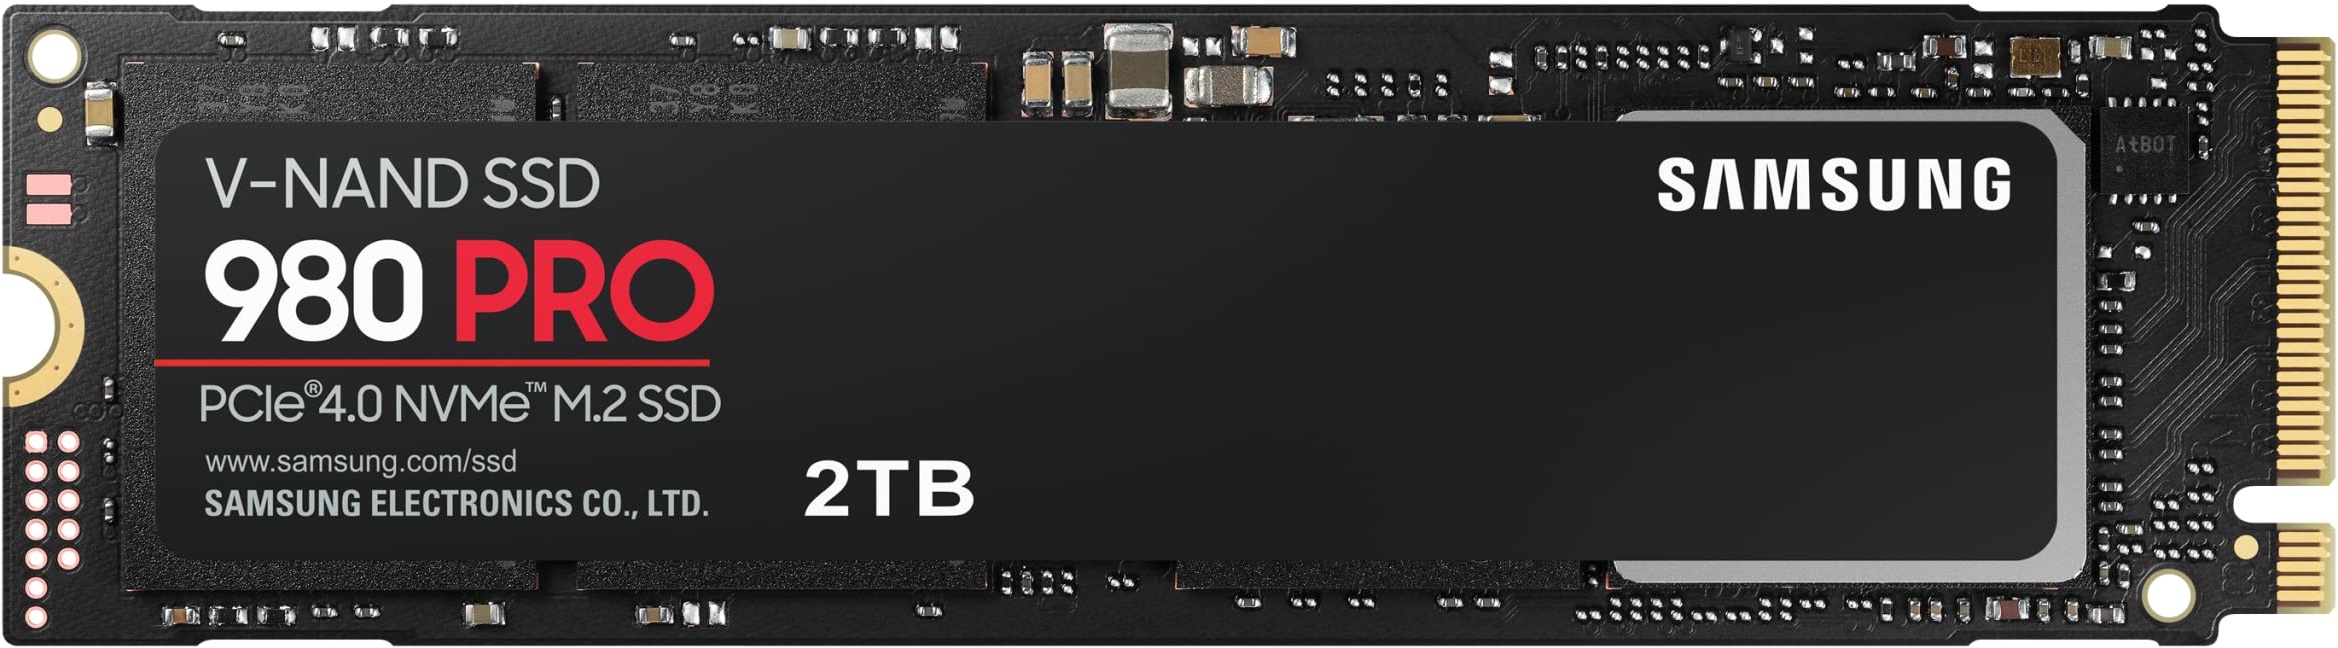 Samsung 980 PRO NVMe M.2 SSD, 2 TB, PCIe 4.0, 7.000 MB/s Lesen, 5.000 MB/s Schreiben, Interne SSD für Gaming und Videobearbeitung, MZ-V8P2T0BW